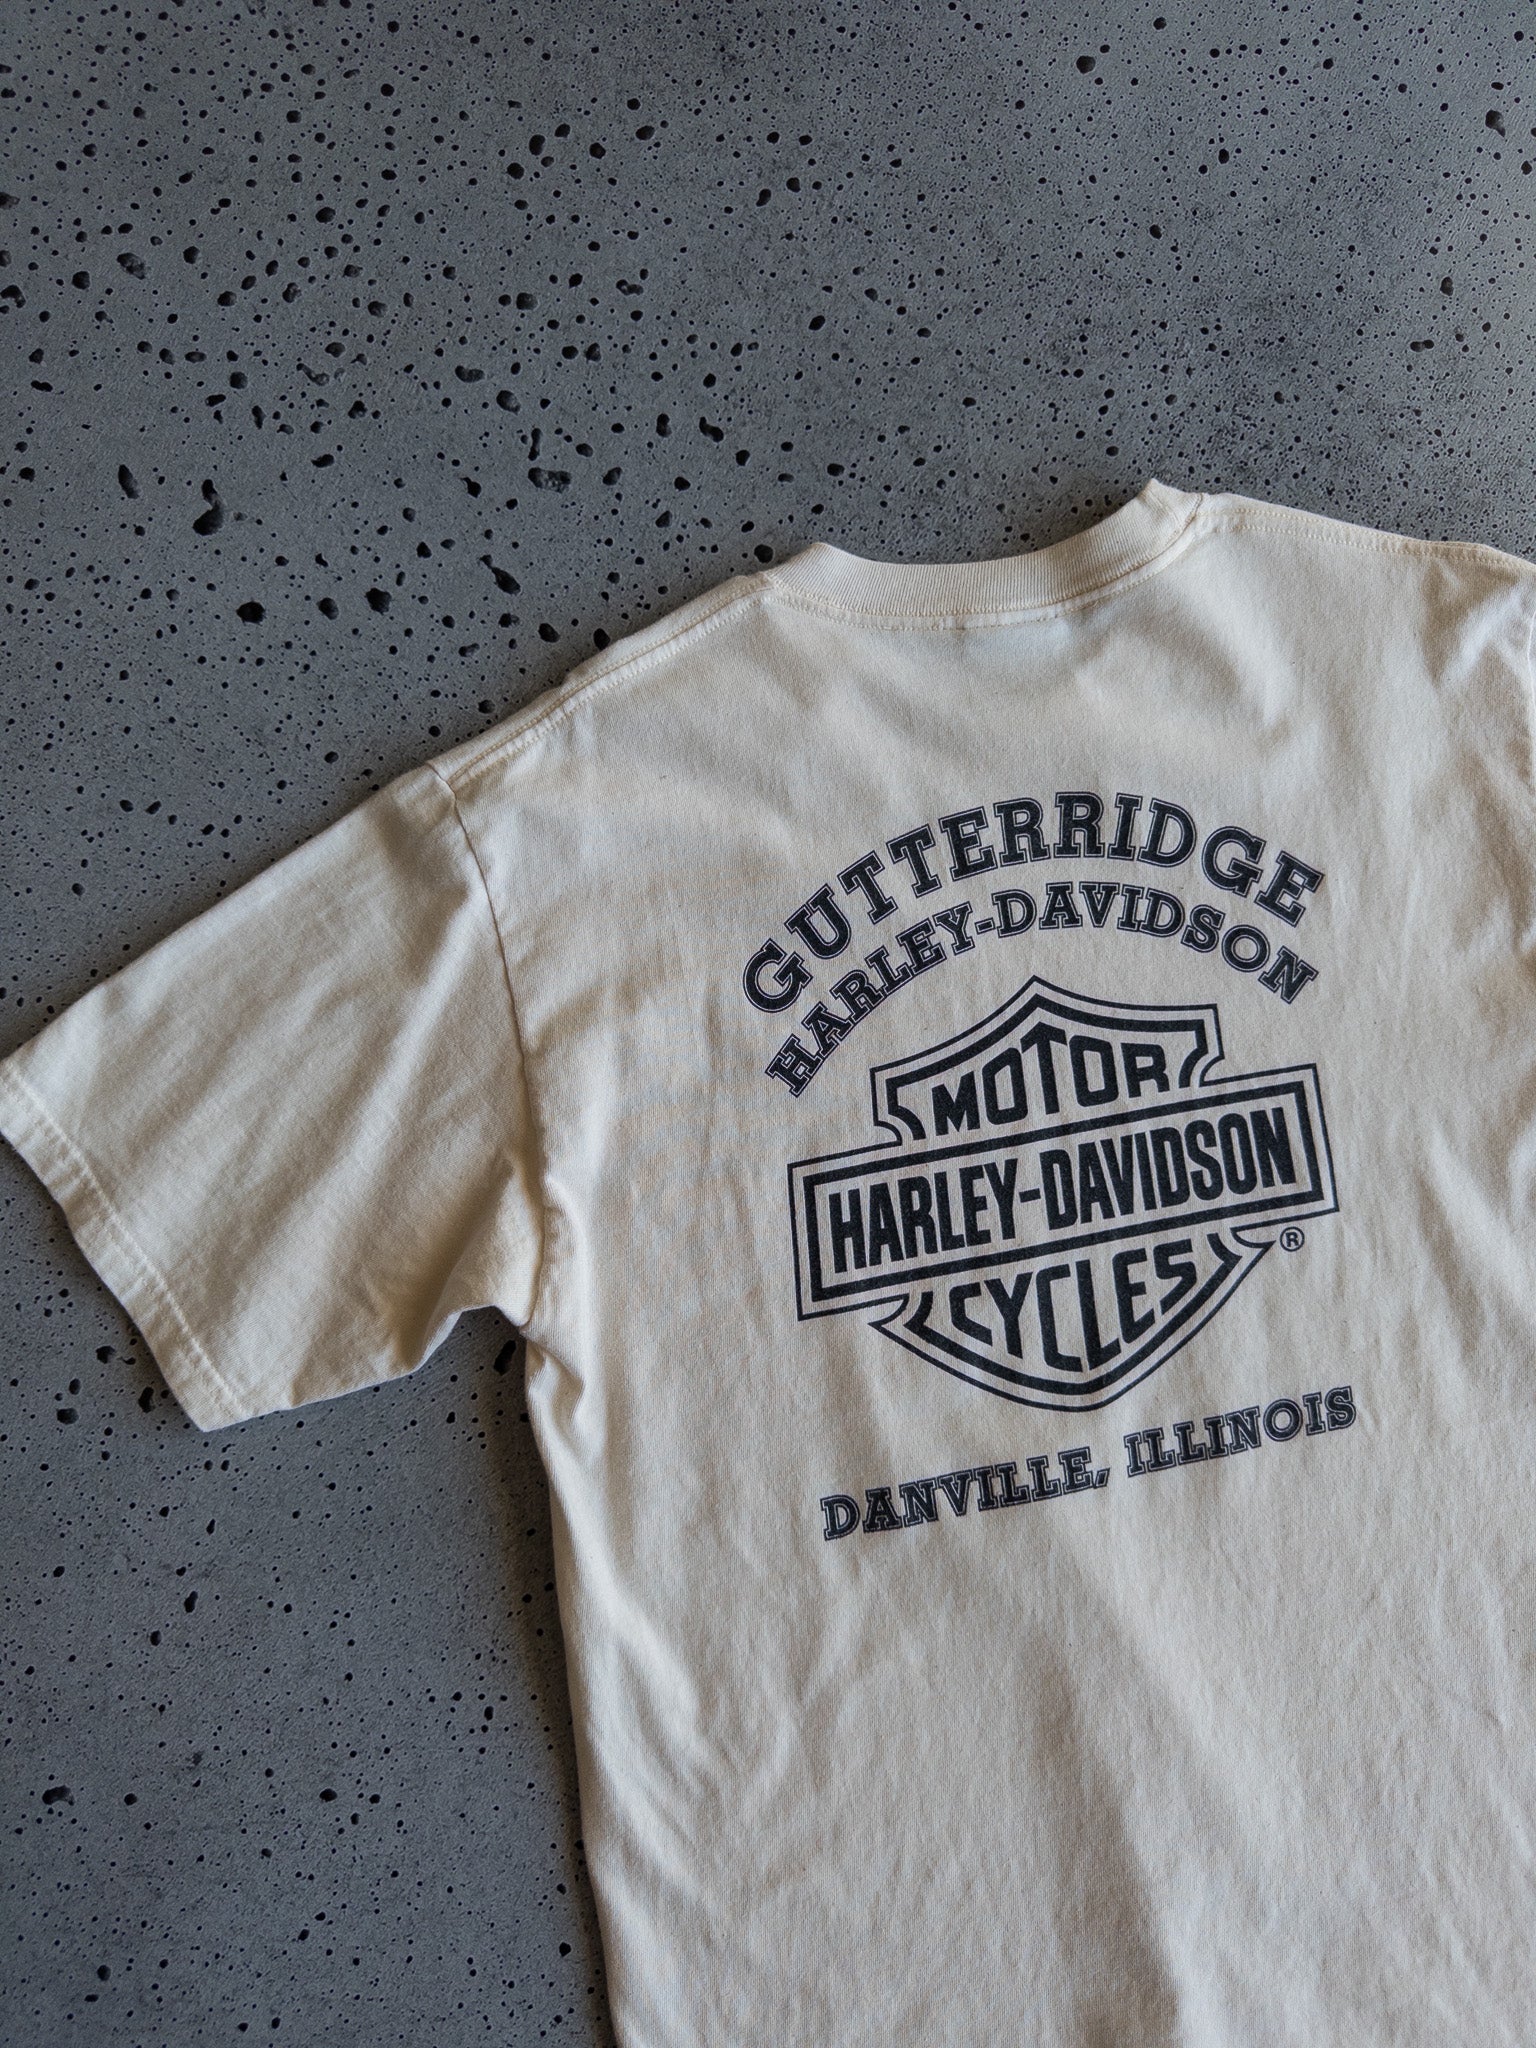 Vintage Harley Davidson Illinois Tee (M)